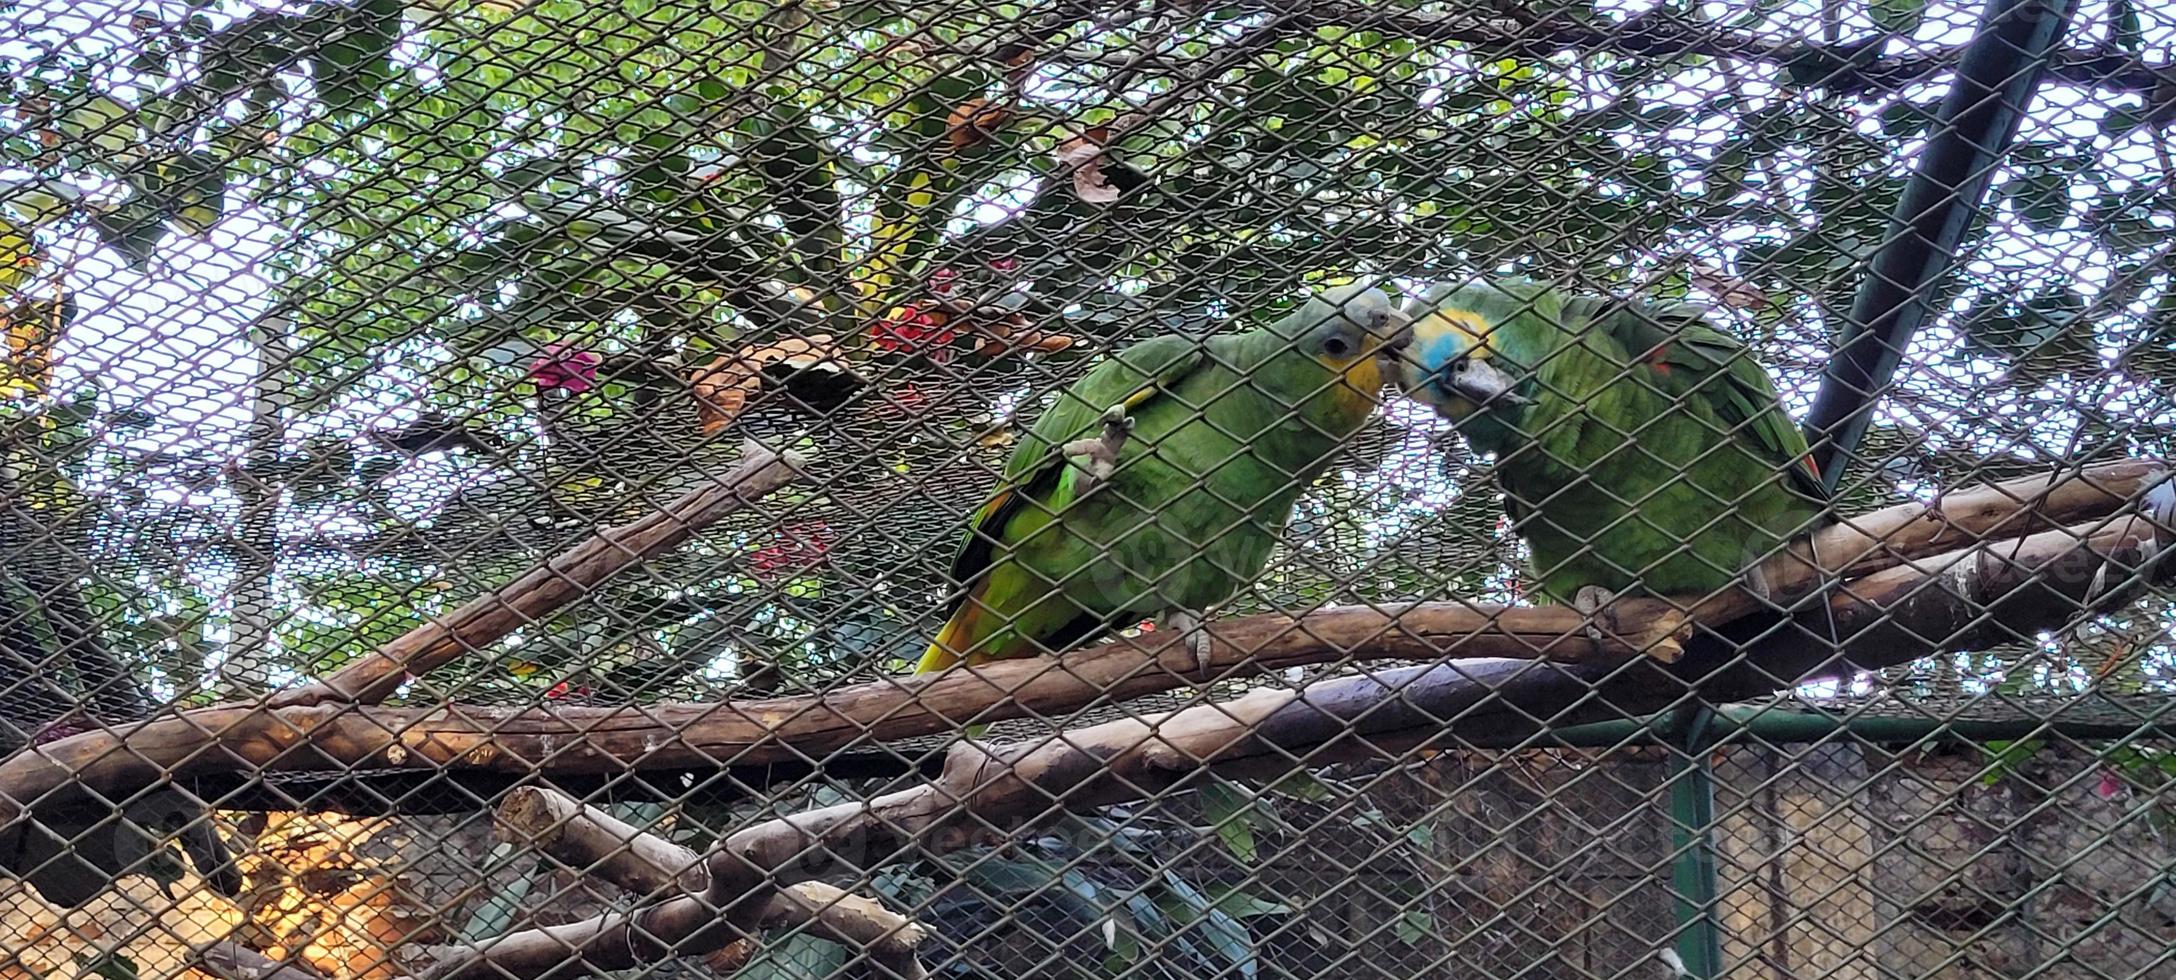 par av papegojor i bur tillsammans kel foto